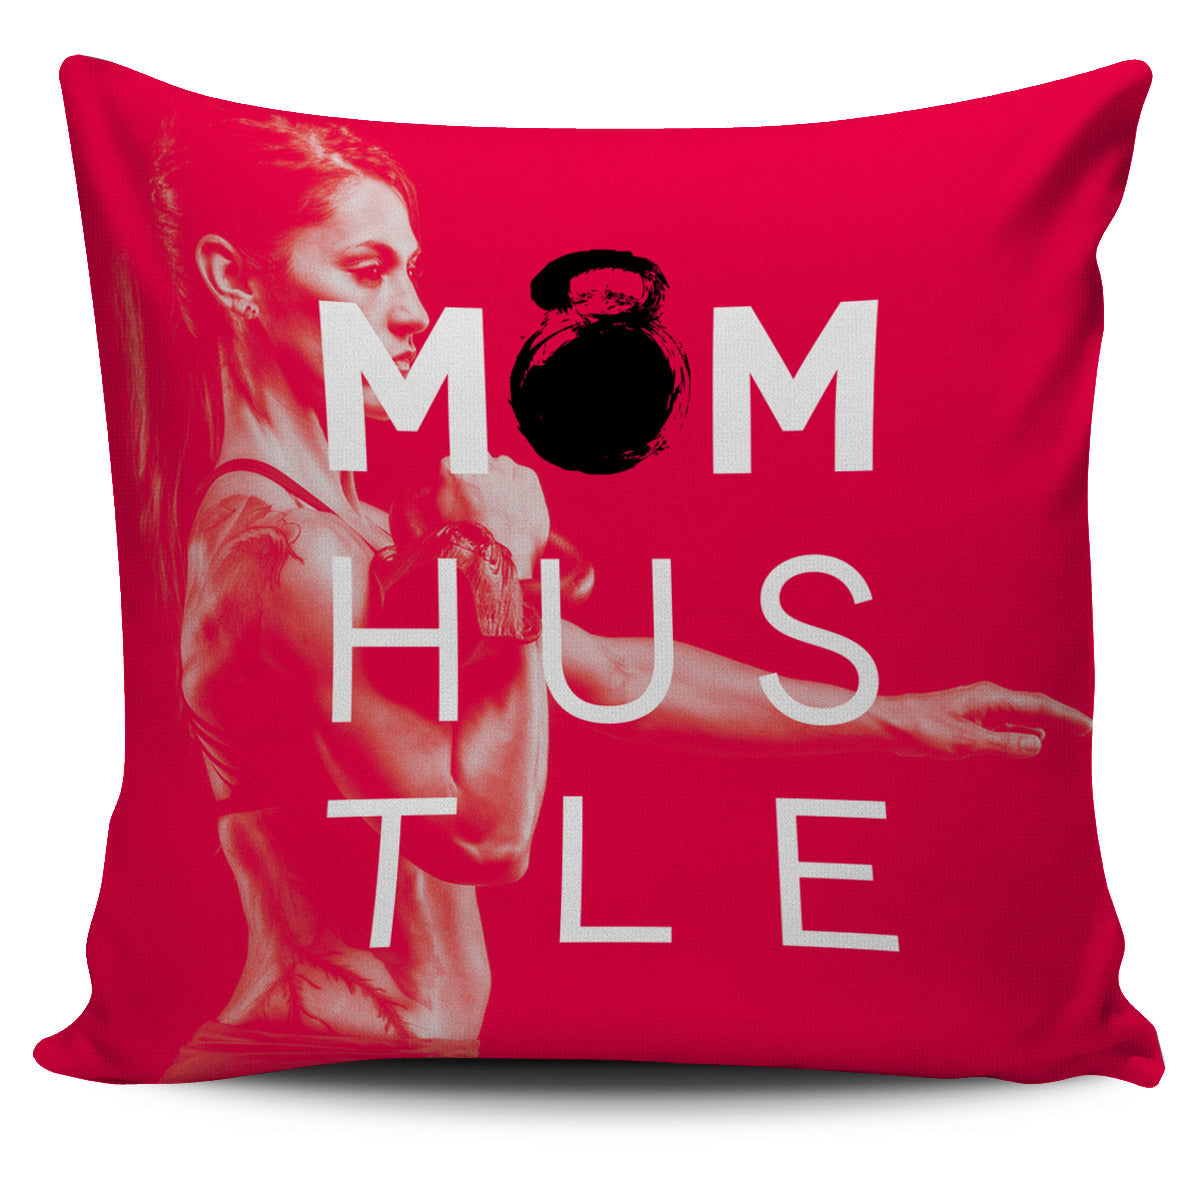 Mom Hustle Pillow Cover